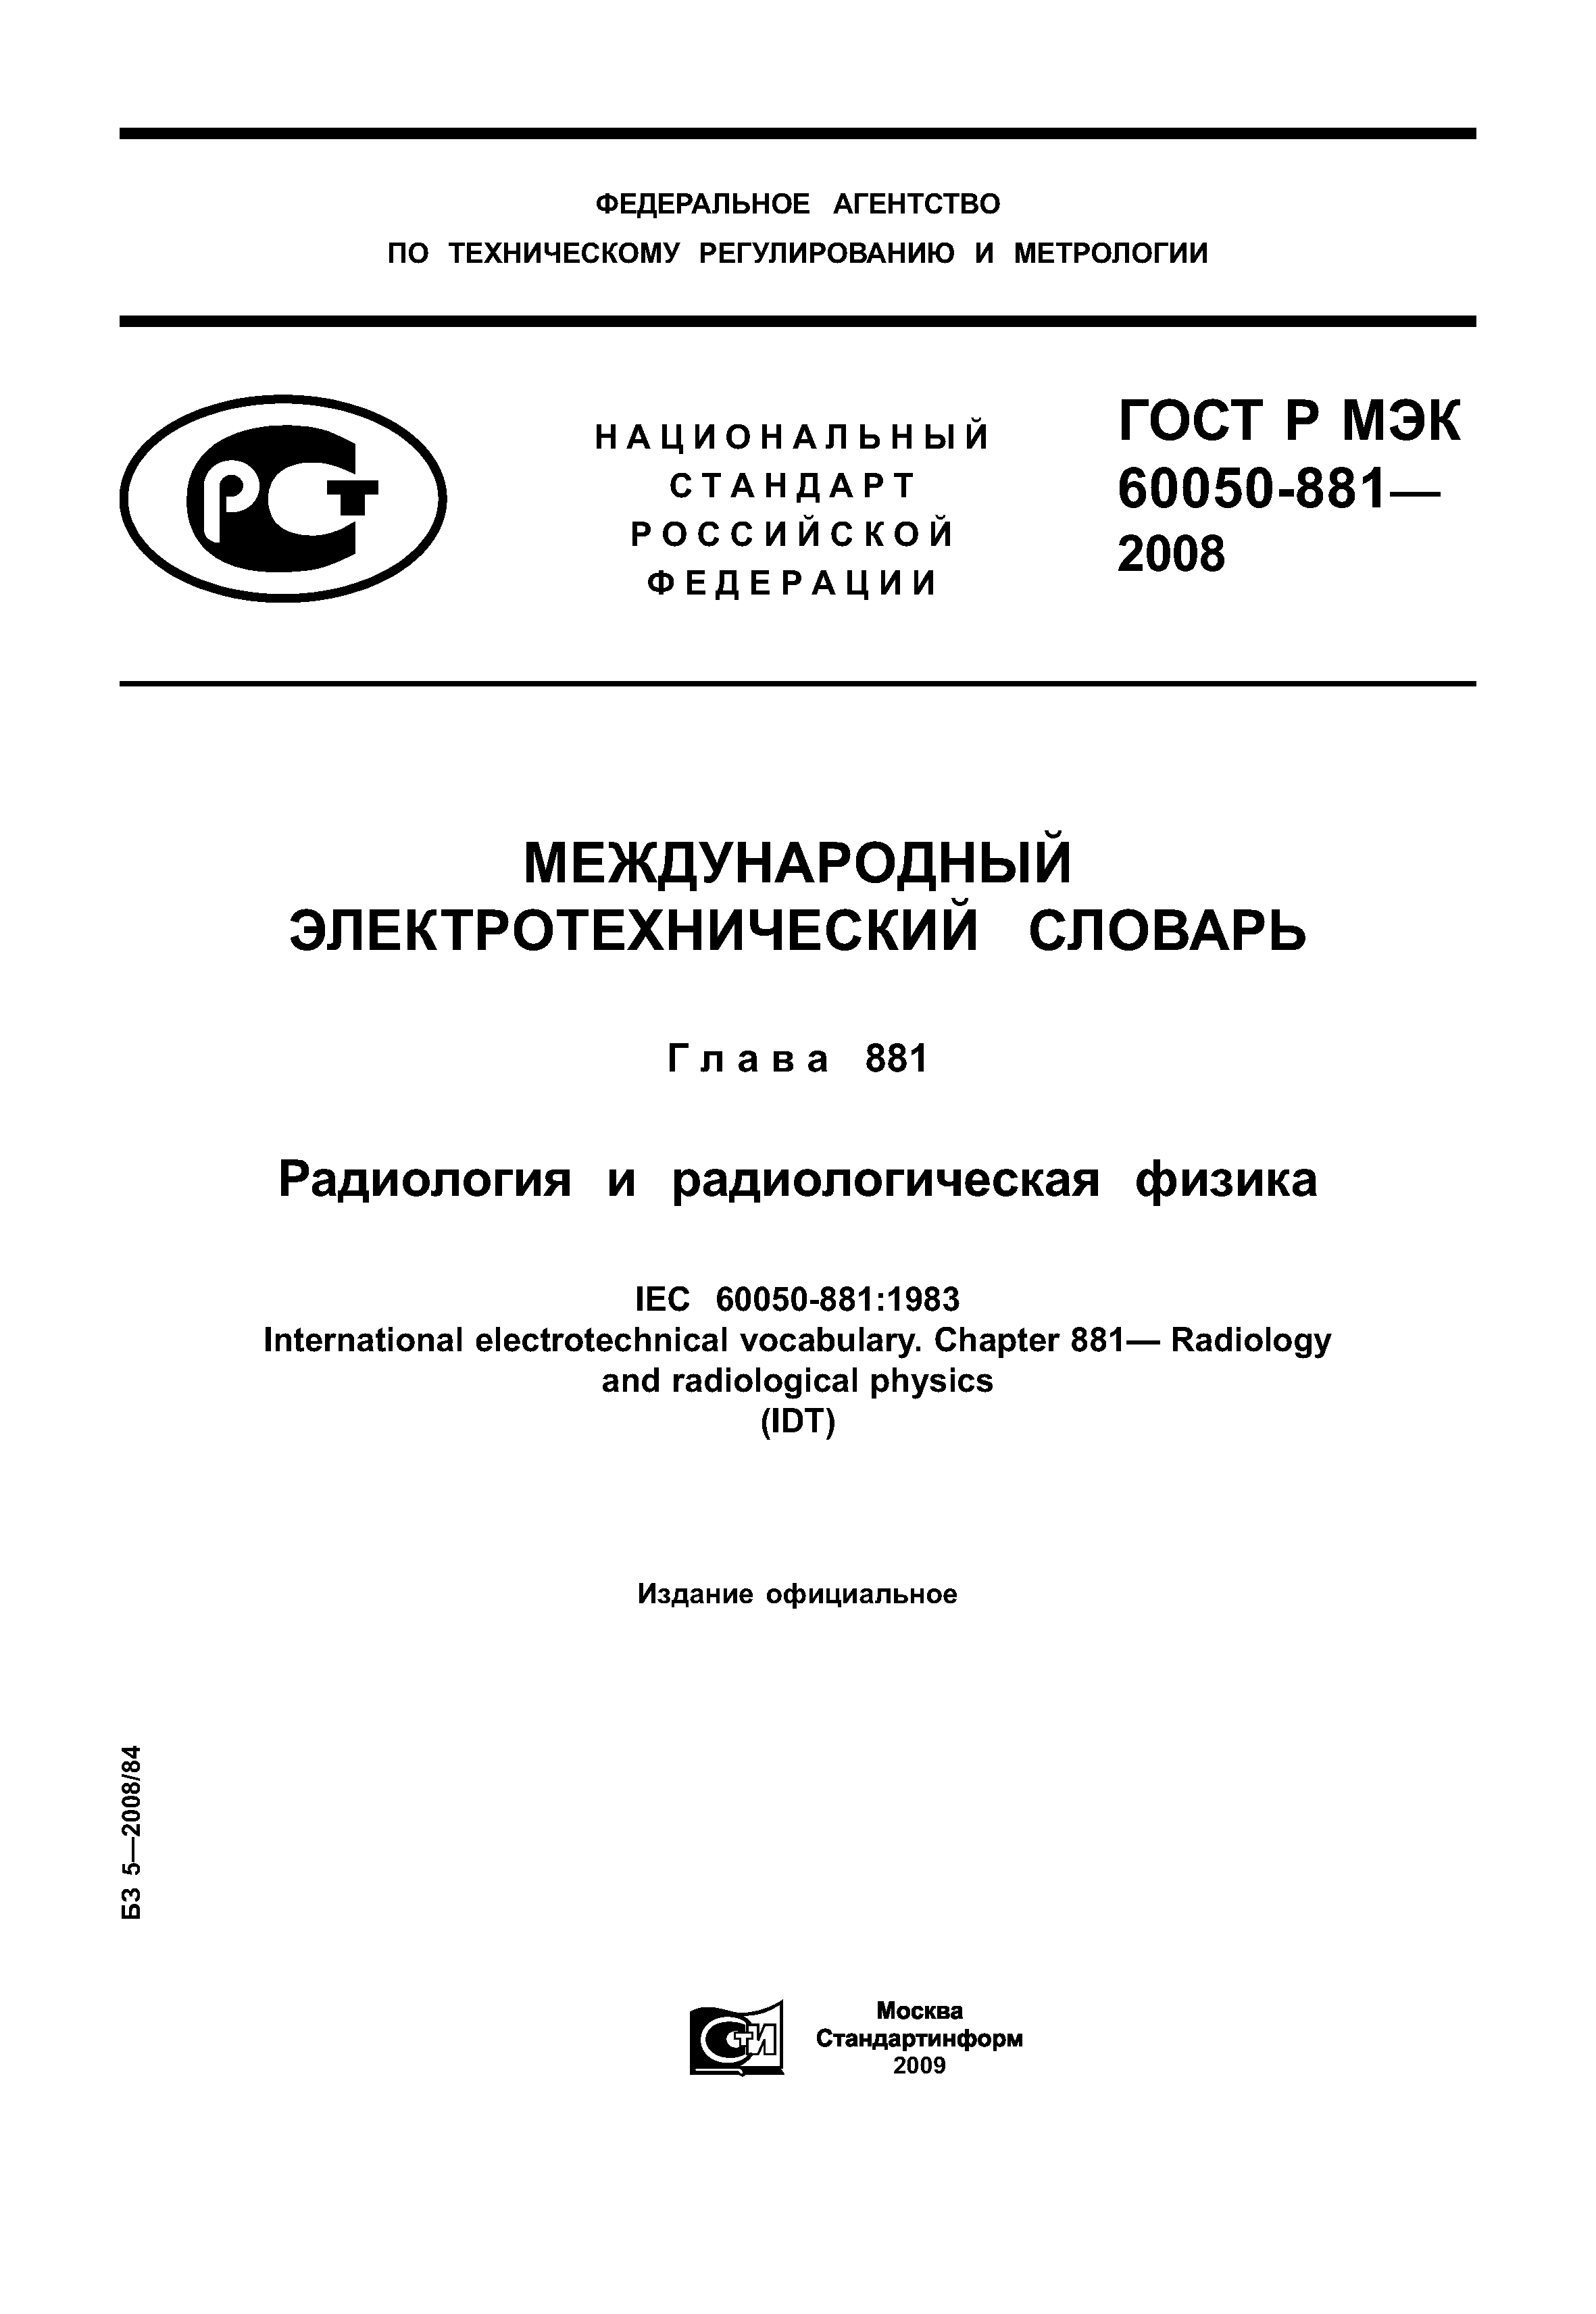 ГОСТ Р МЭК 60050-881-2008